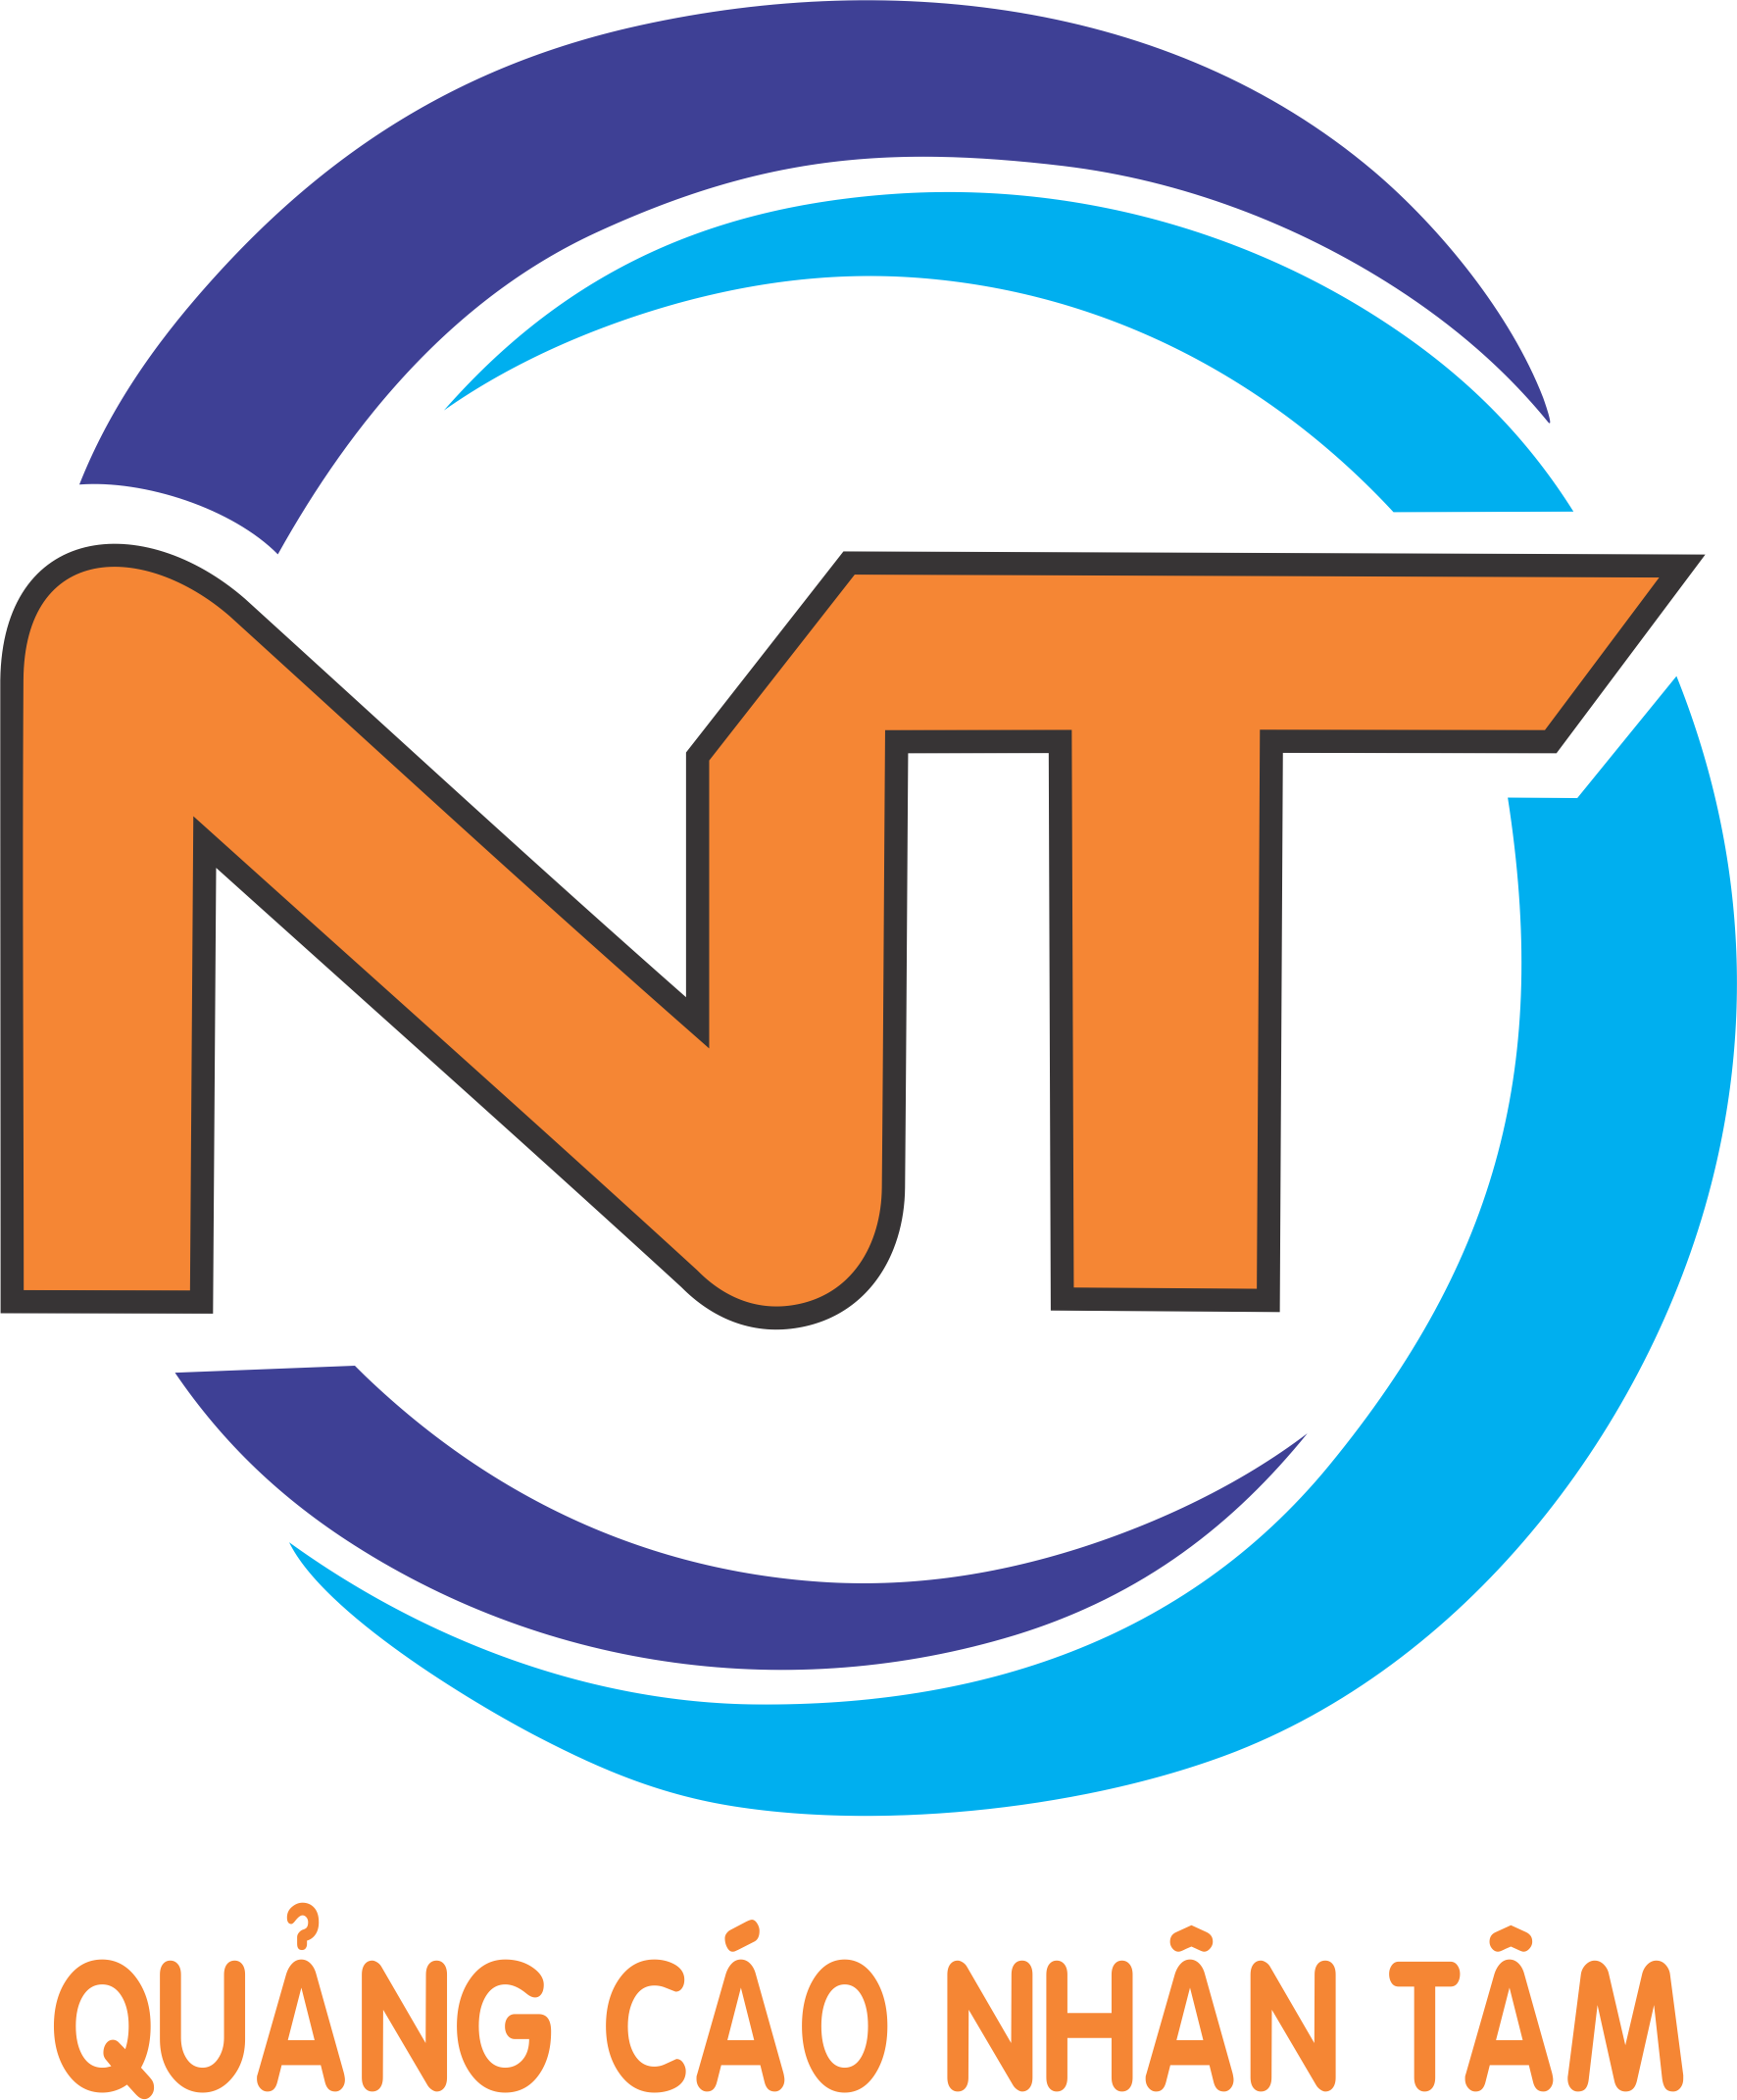 NT là từ viết tắt của logo Công ty TNHH Quảng Cáo Nhân Tâm - Catnhanh